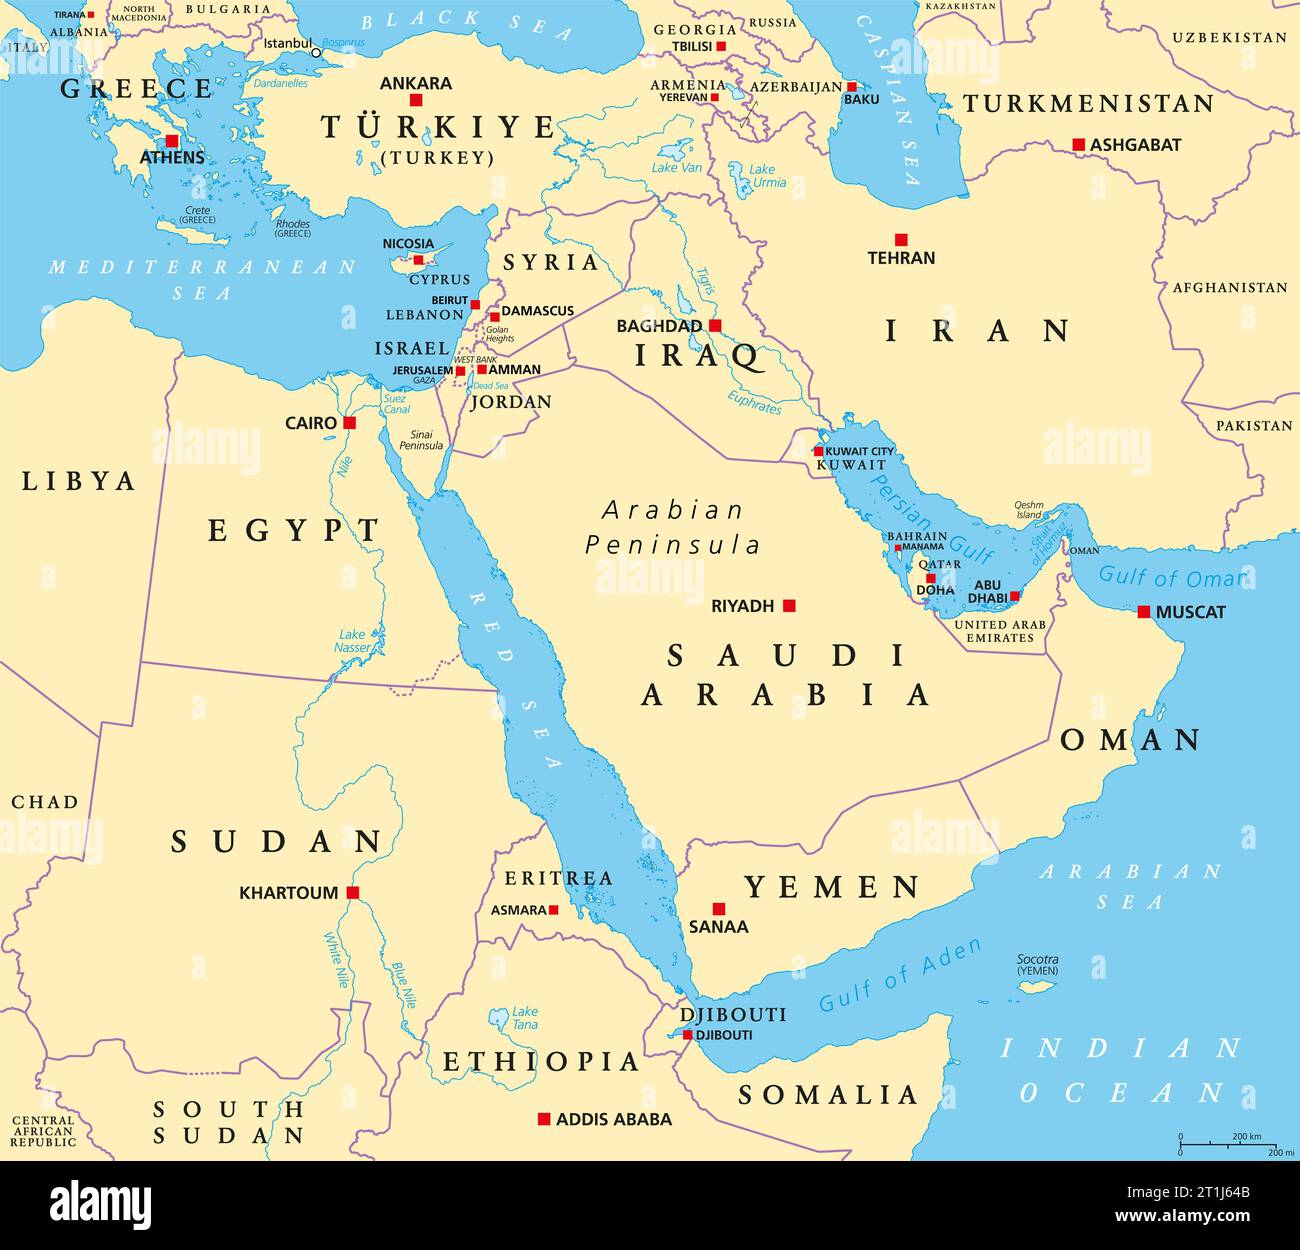 Der nahe Osten, politische Karte. Geopolitische Region, die die Arabische Halbinsel, die Levante, die Türkei, Ägypten, den Iran und den Irak umfasst. Naher Osten. Stockfoto